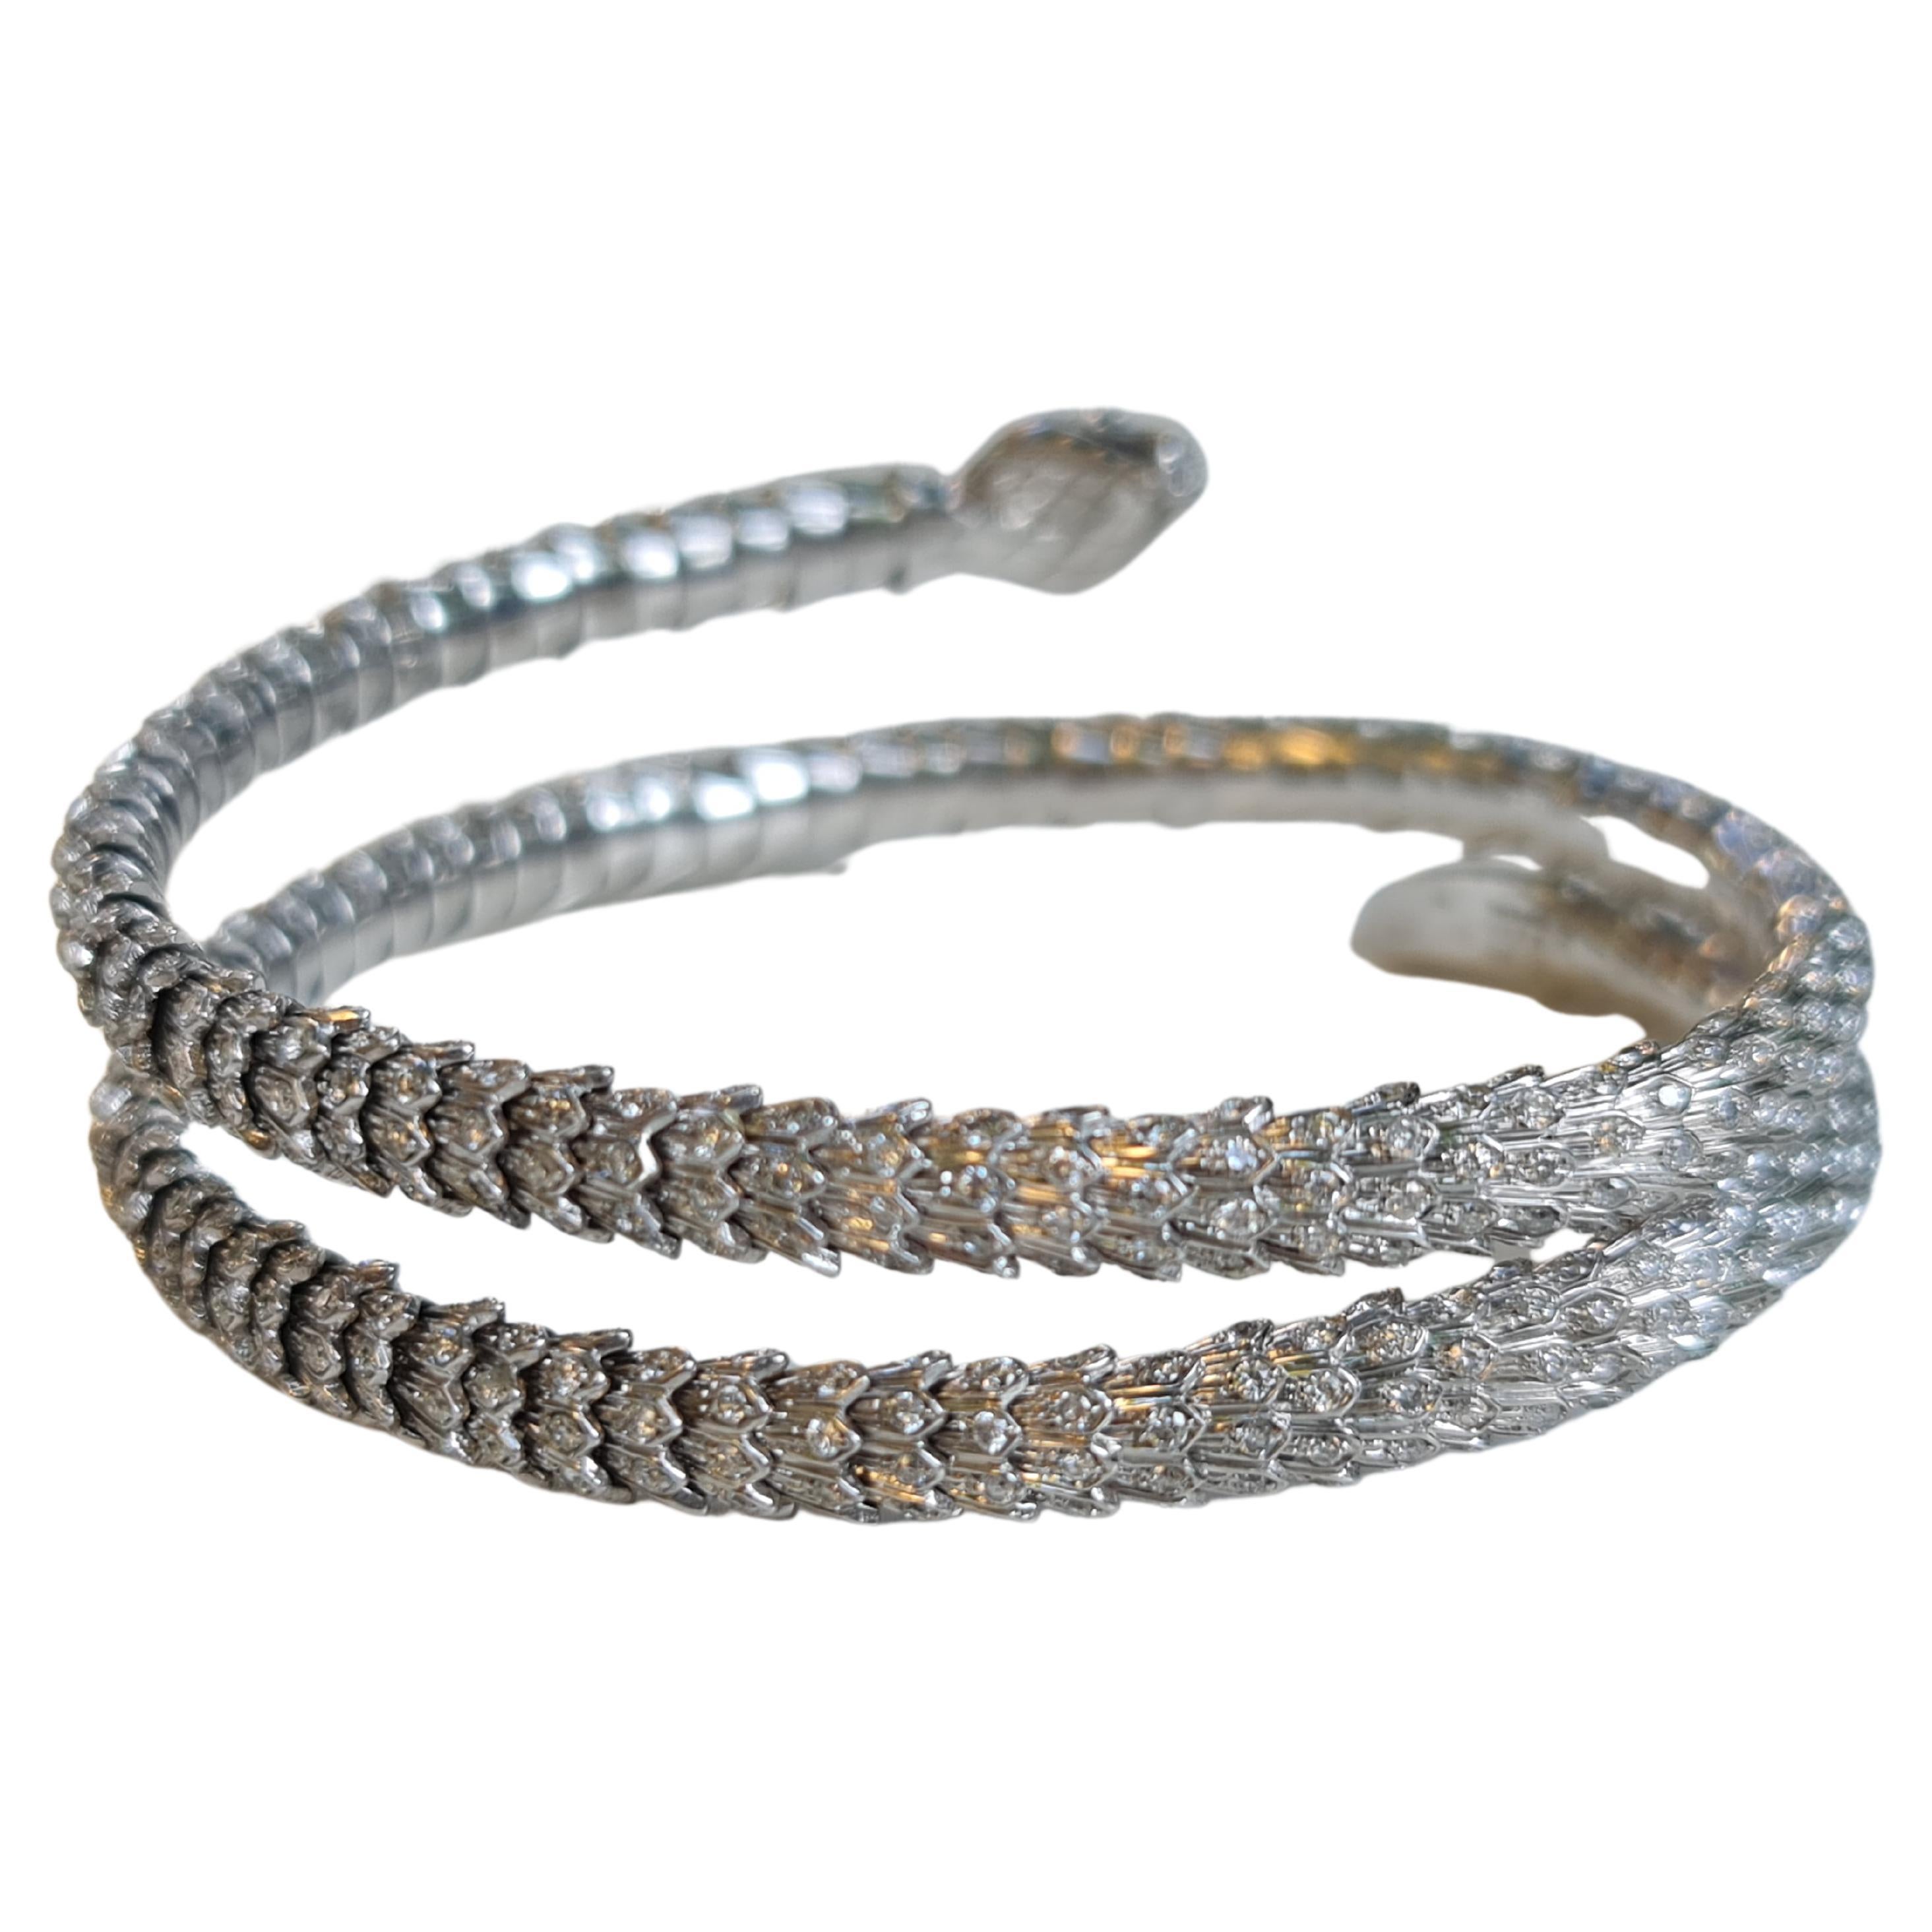 Serpenti-Armband 5,65 Karat natürliche Diamanten, 18K Weißgold 56 Gramm